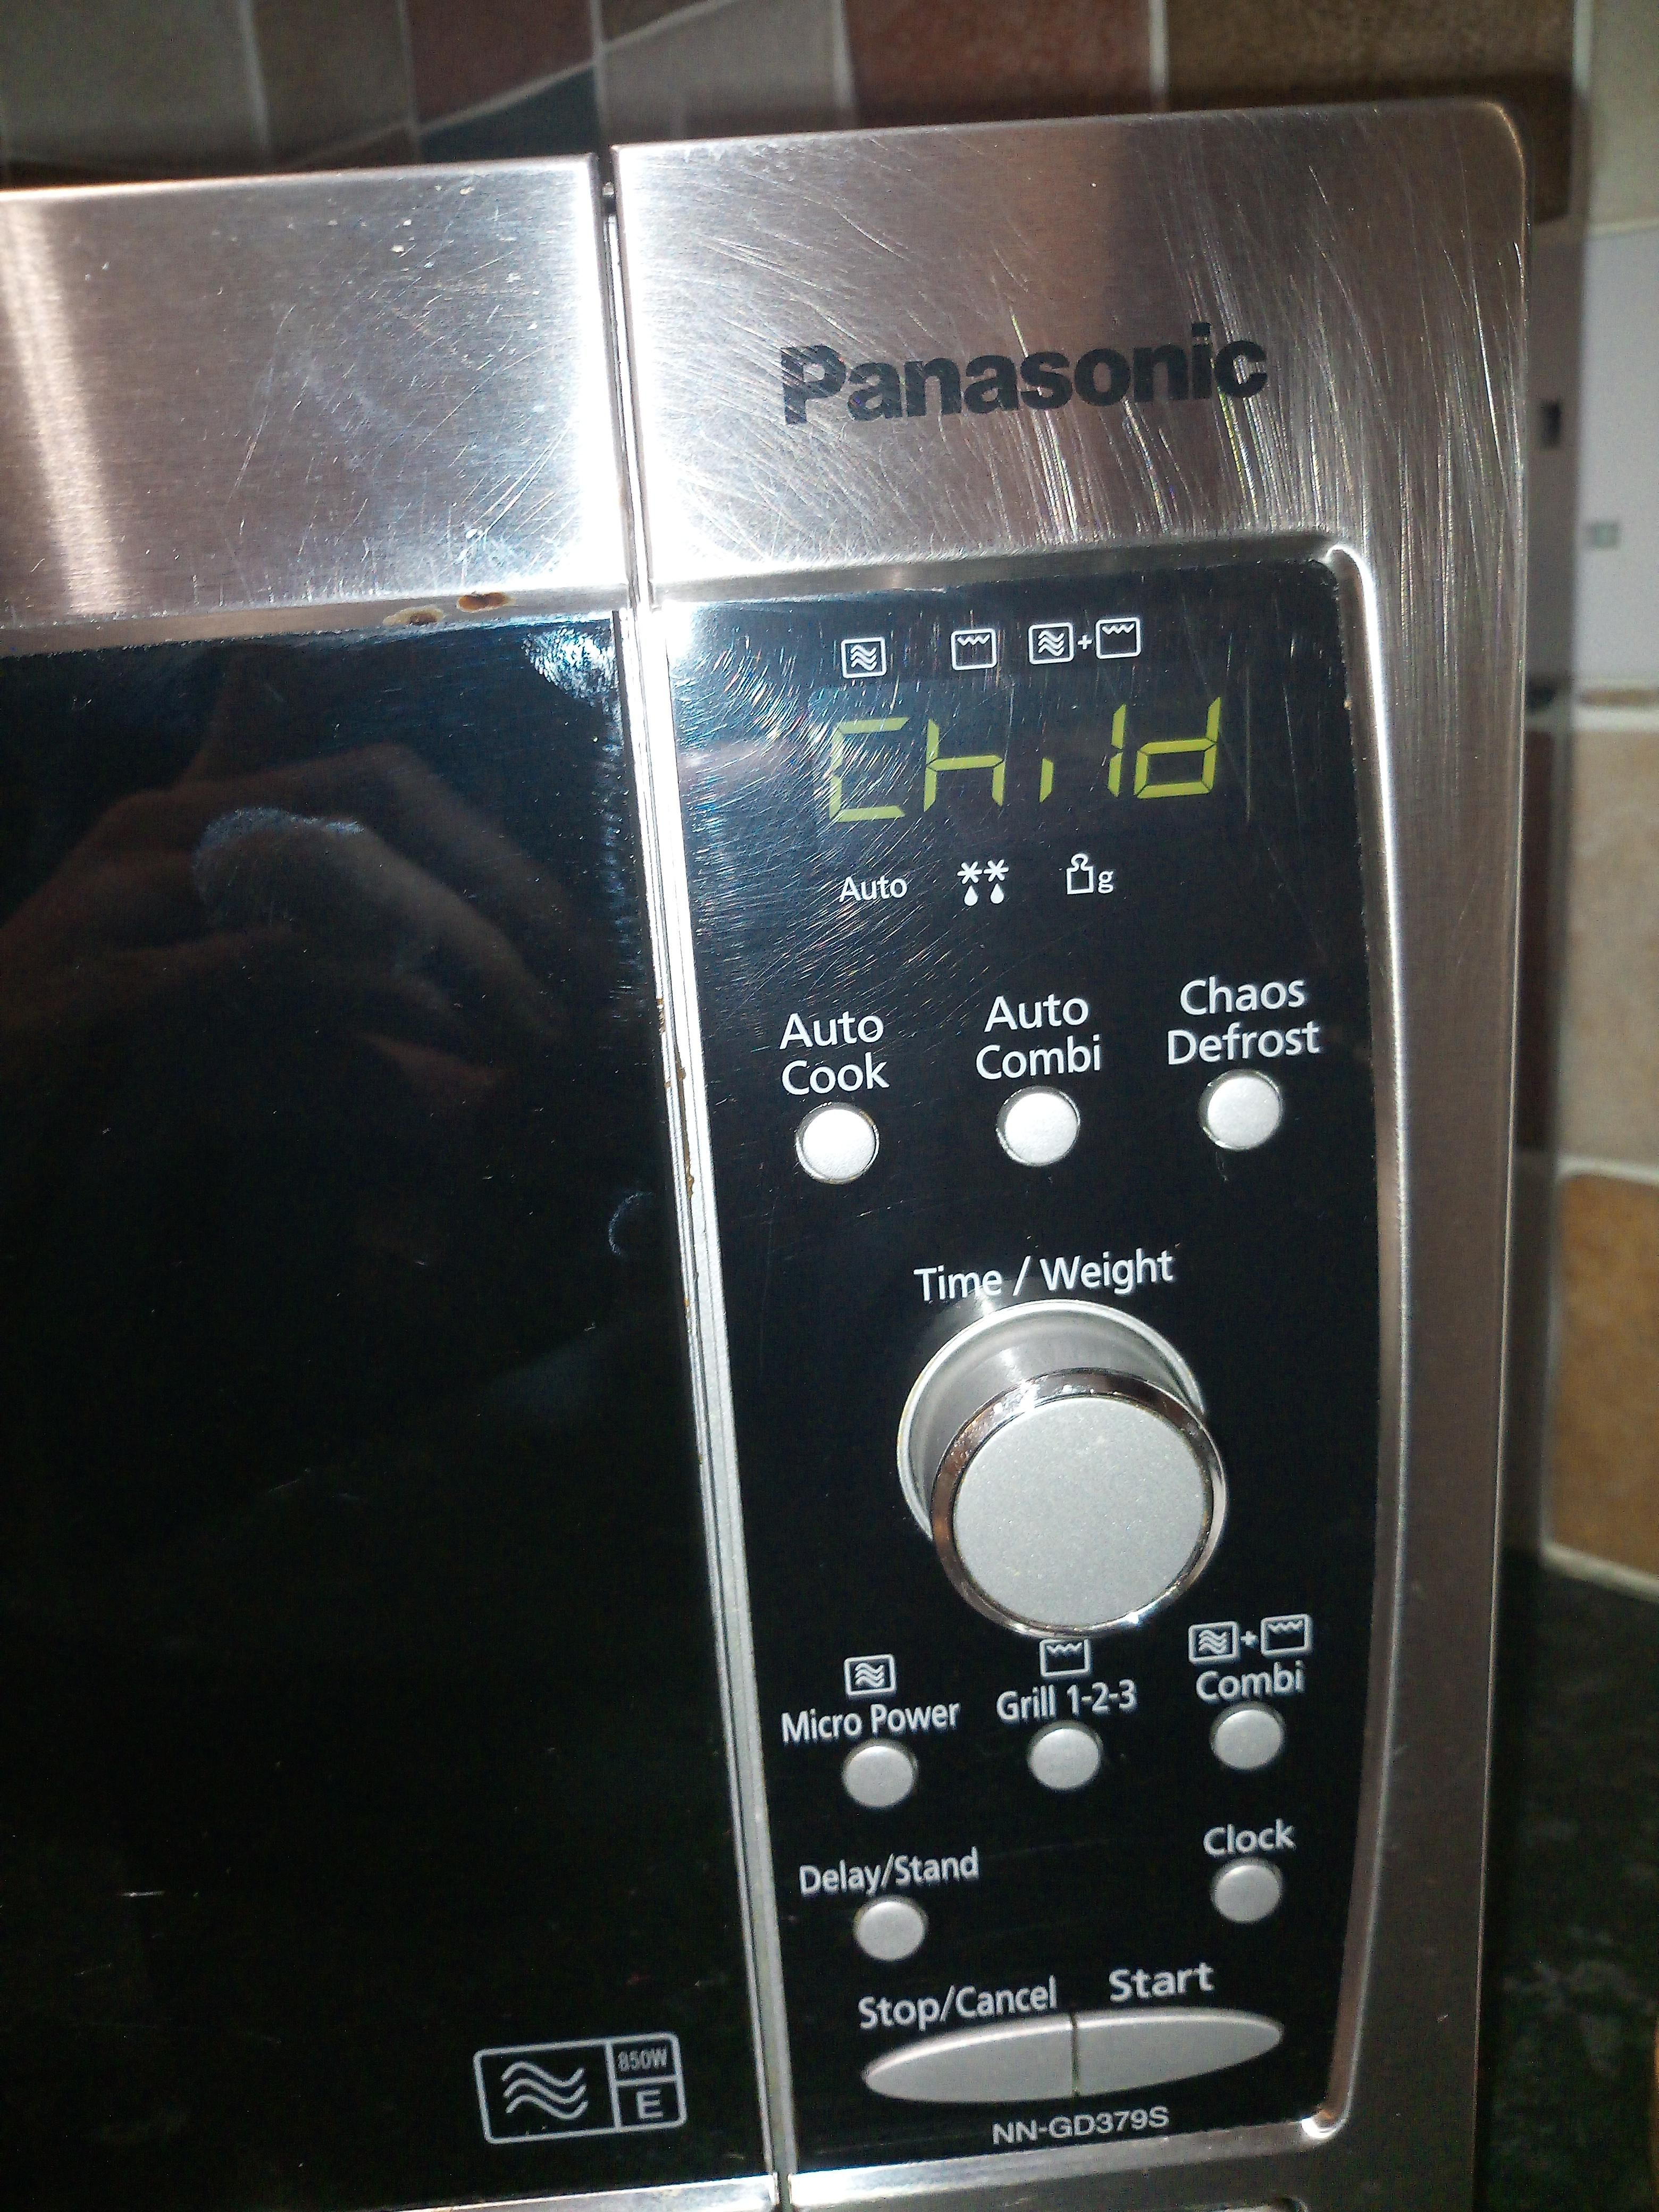 I think my microwave wants a sacrifice